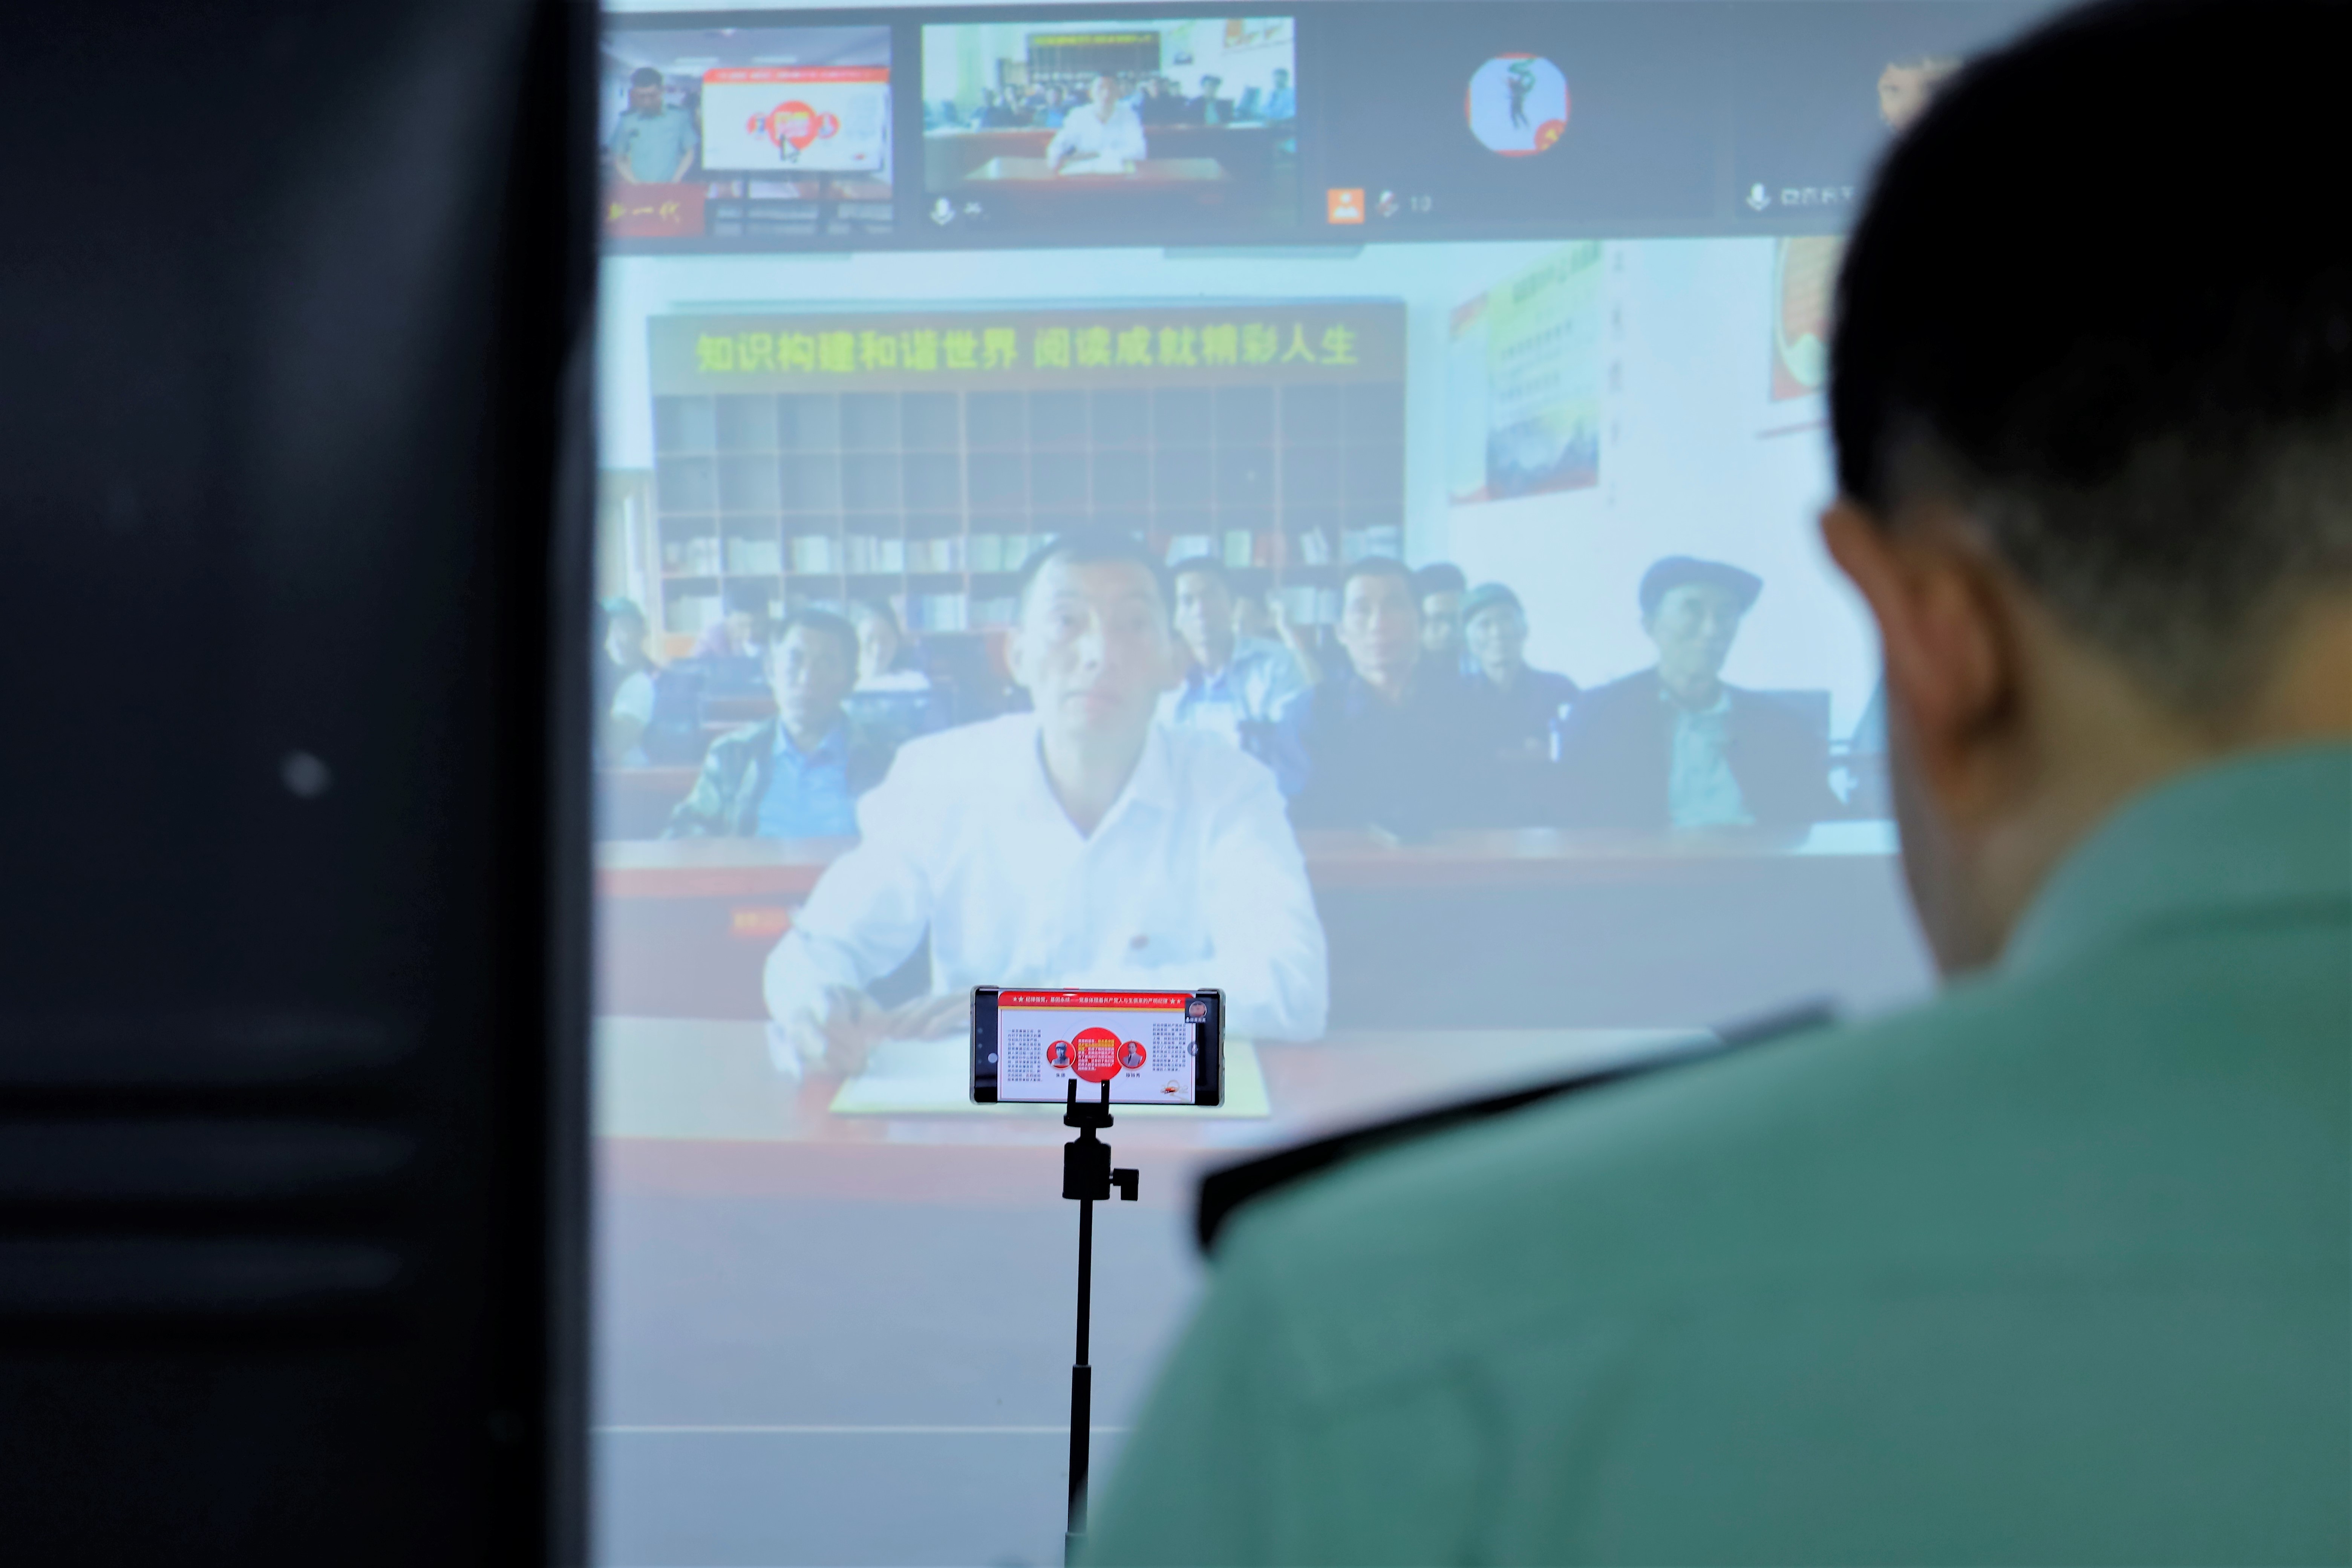 ②7月1日下午，色德村党员通过视频连线参加杨泽楠授课 (2).jpg